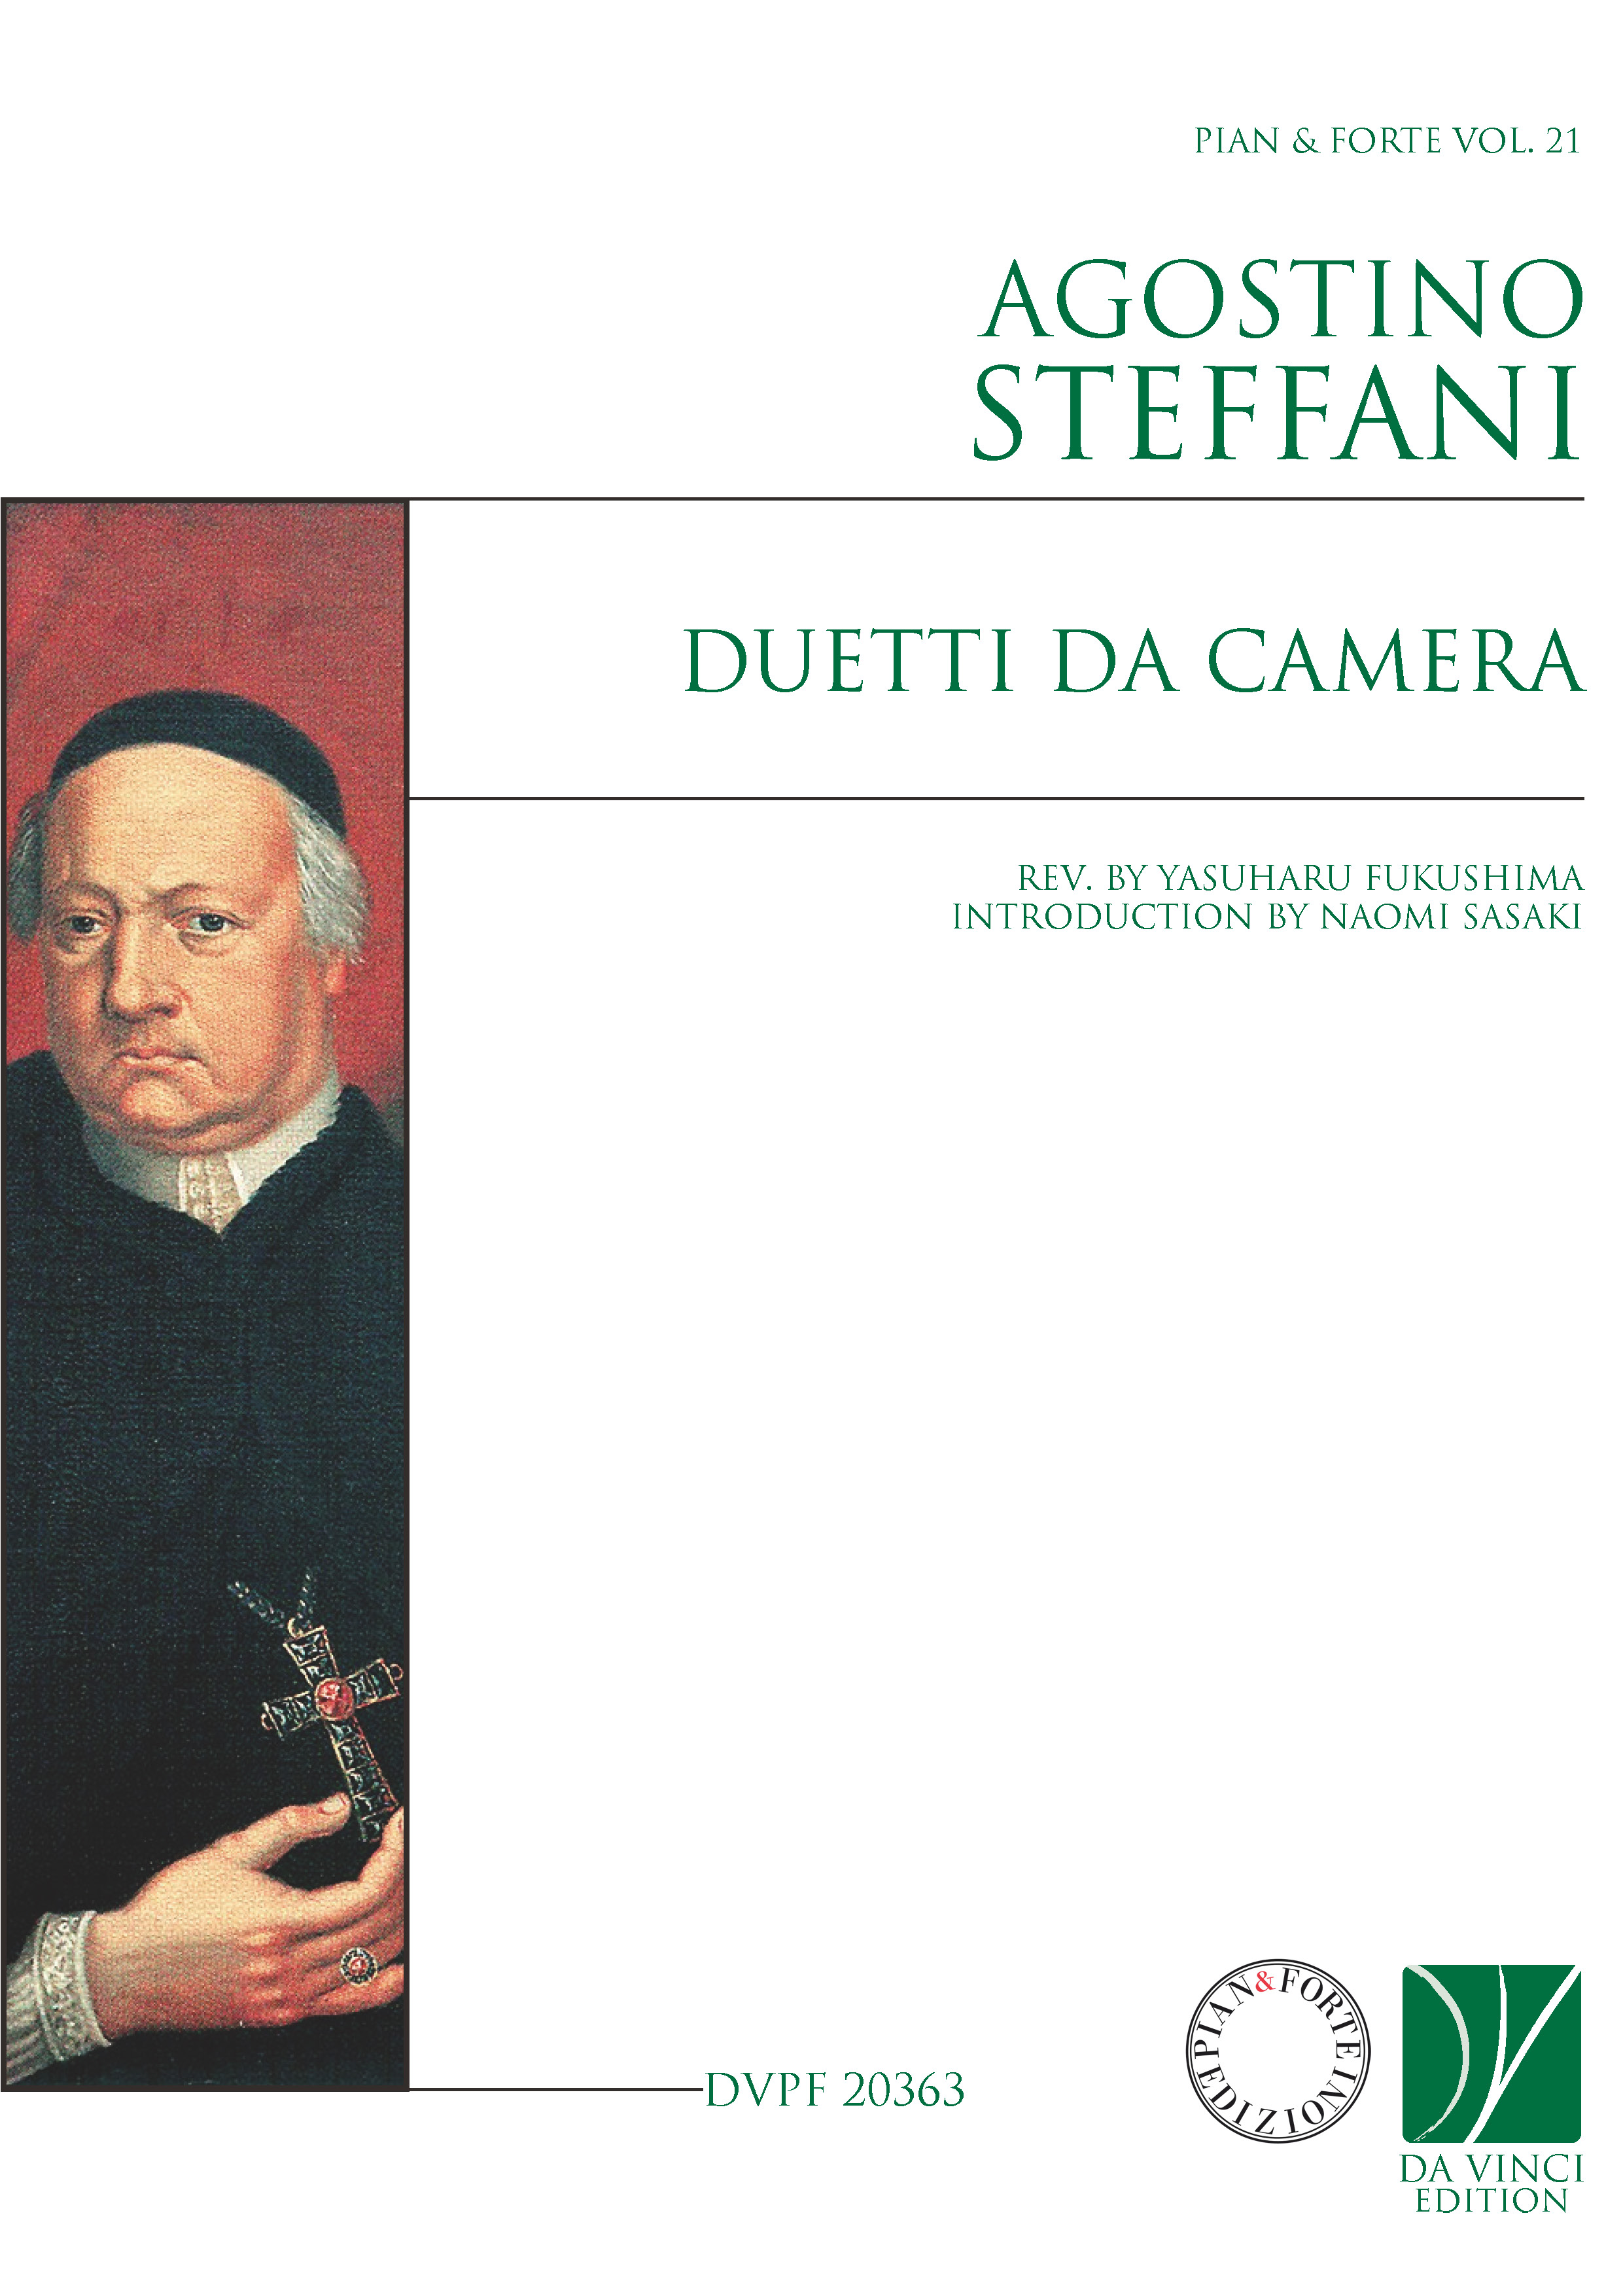 DVPF 20363 - Cover (Steffani - Duetti da camera)